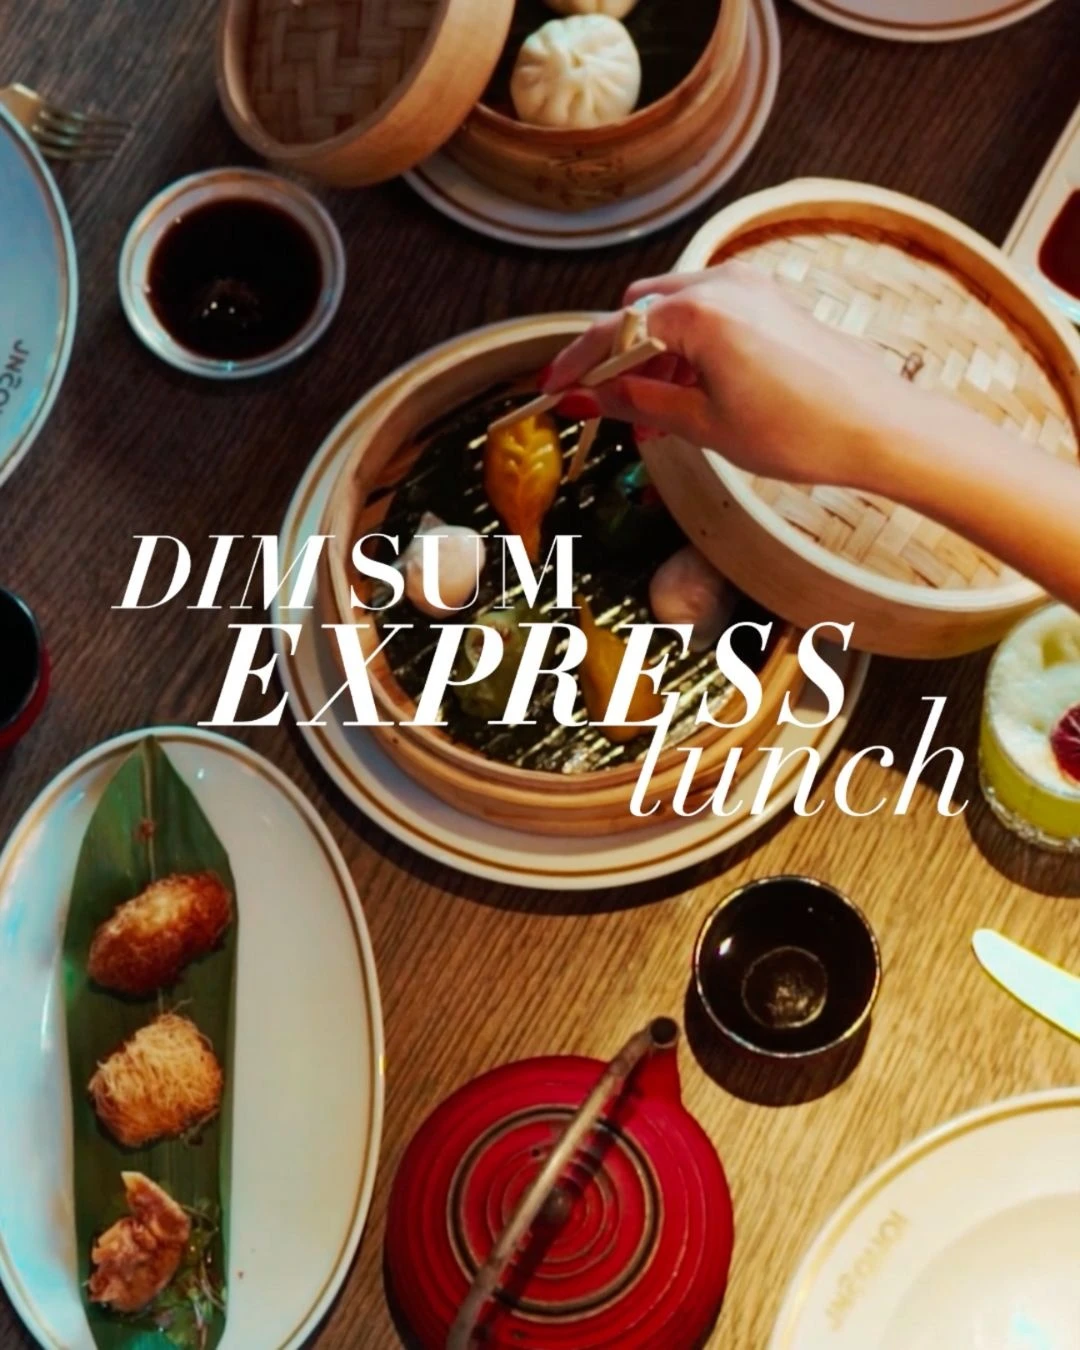 Dim Sum Express Lunch no JNcQUOI Asia